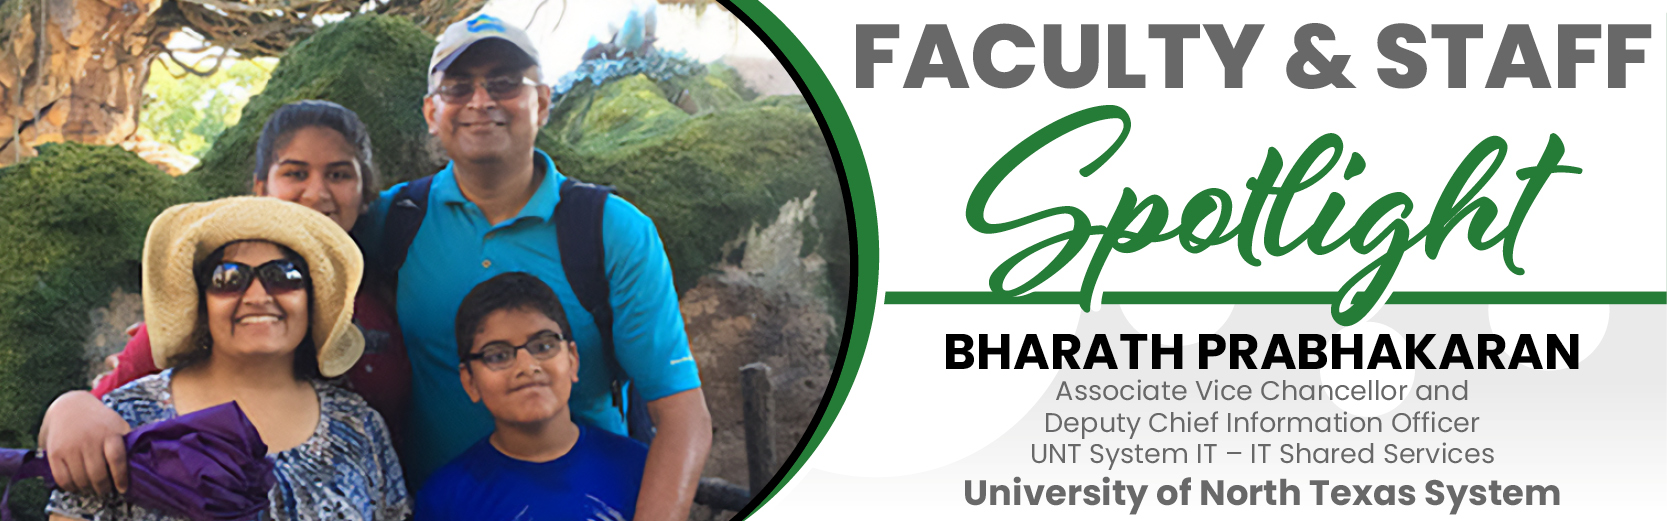 Faculty & Staff Spotlight: Bharath Prabhakaran, UNT System